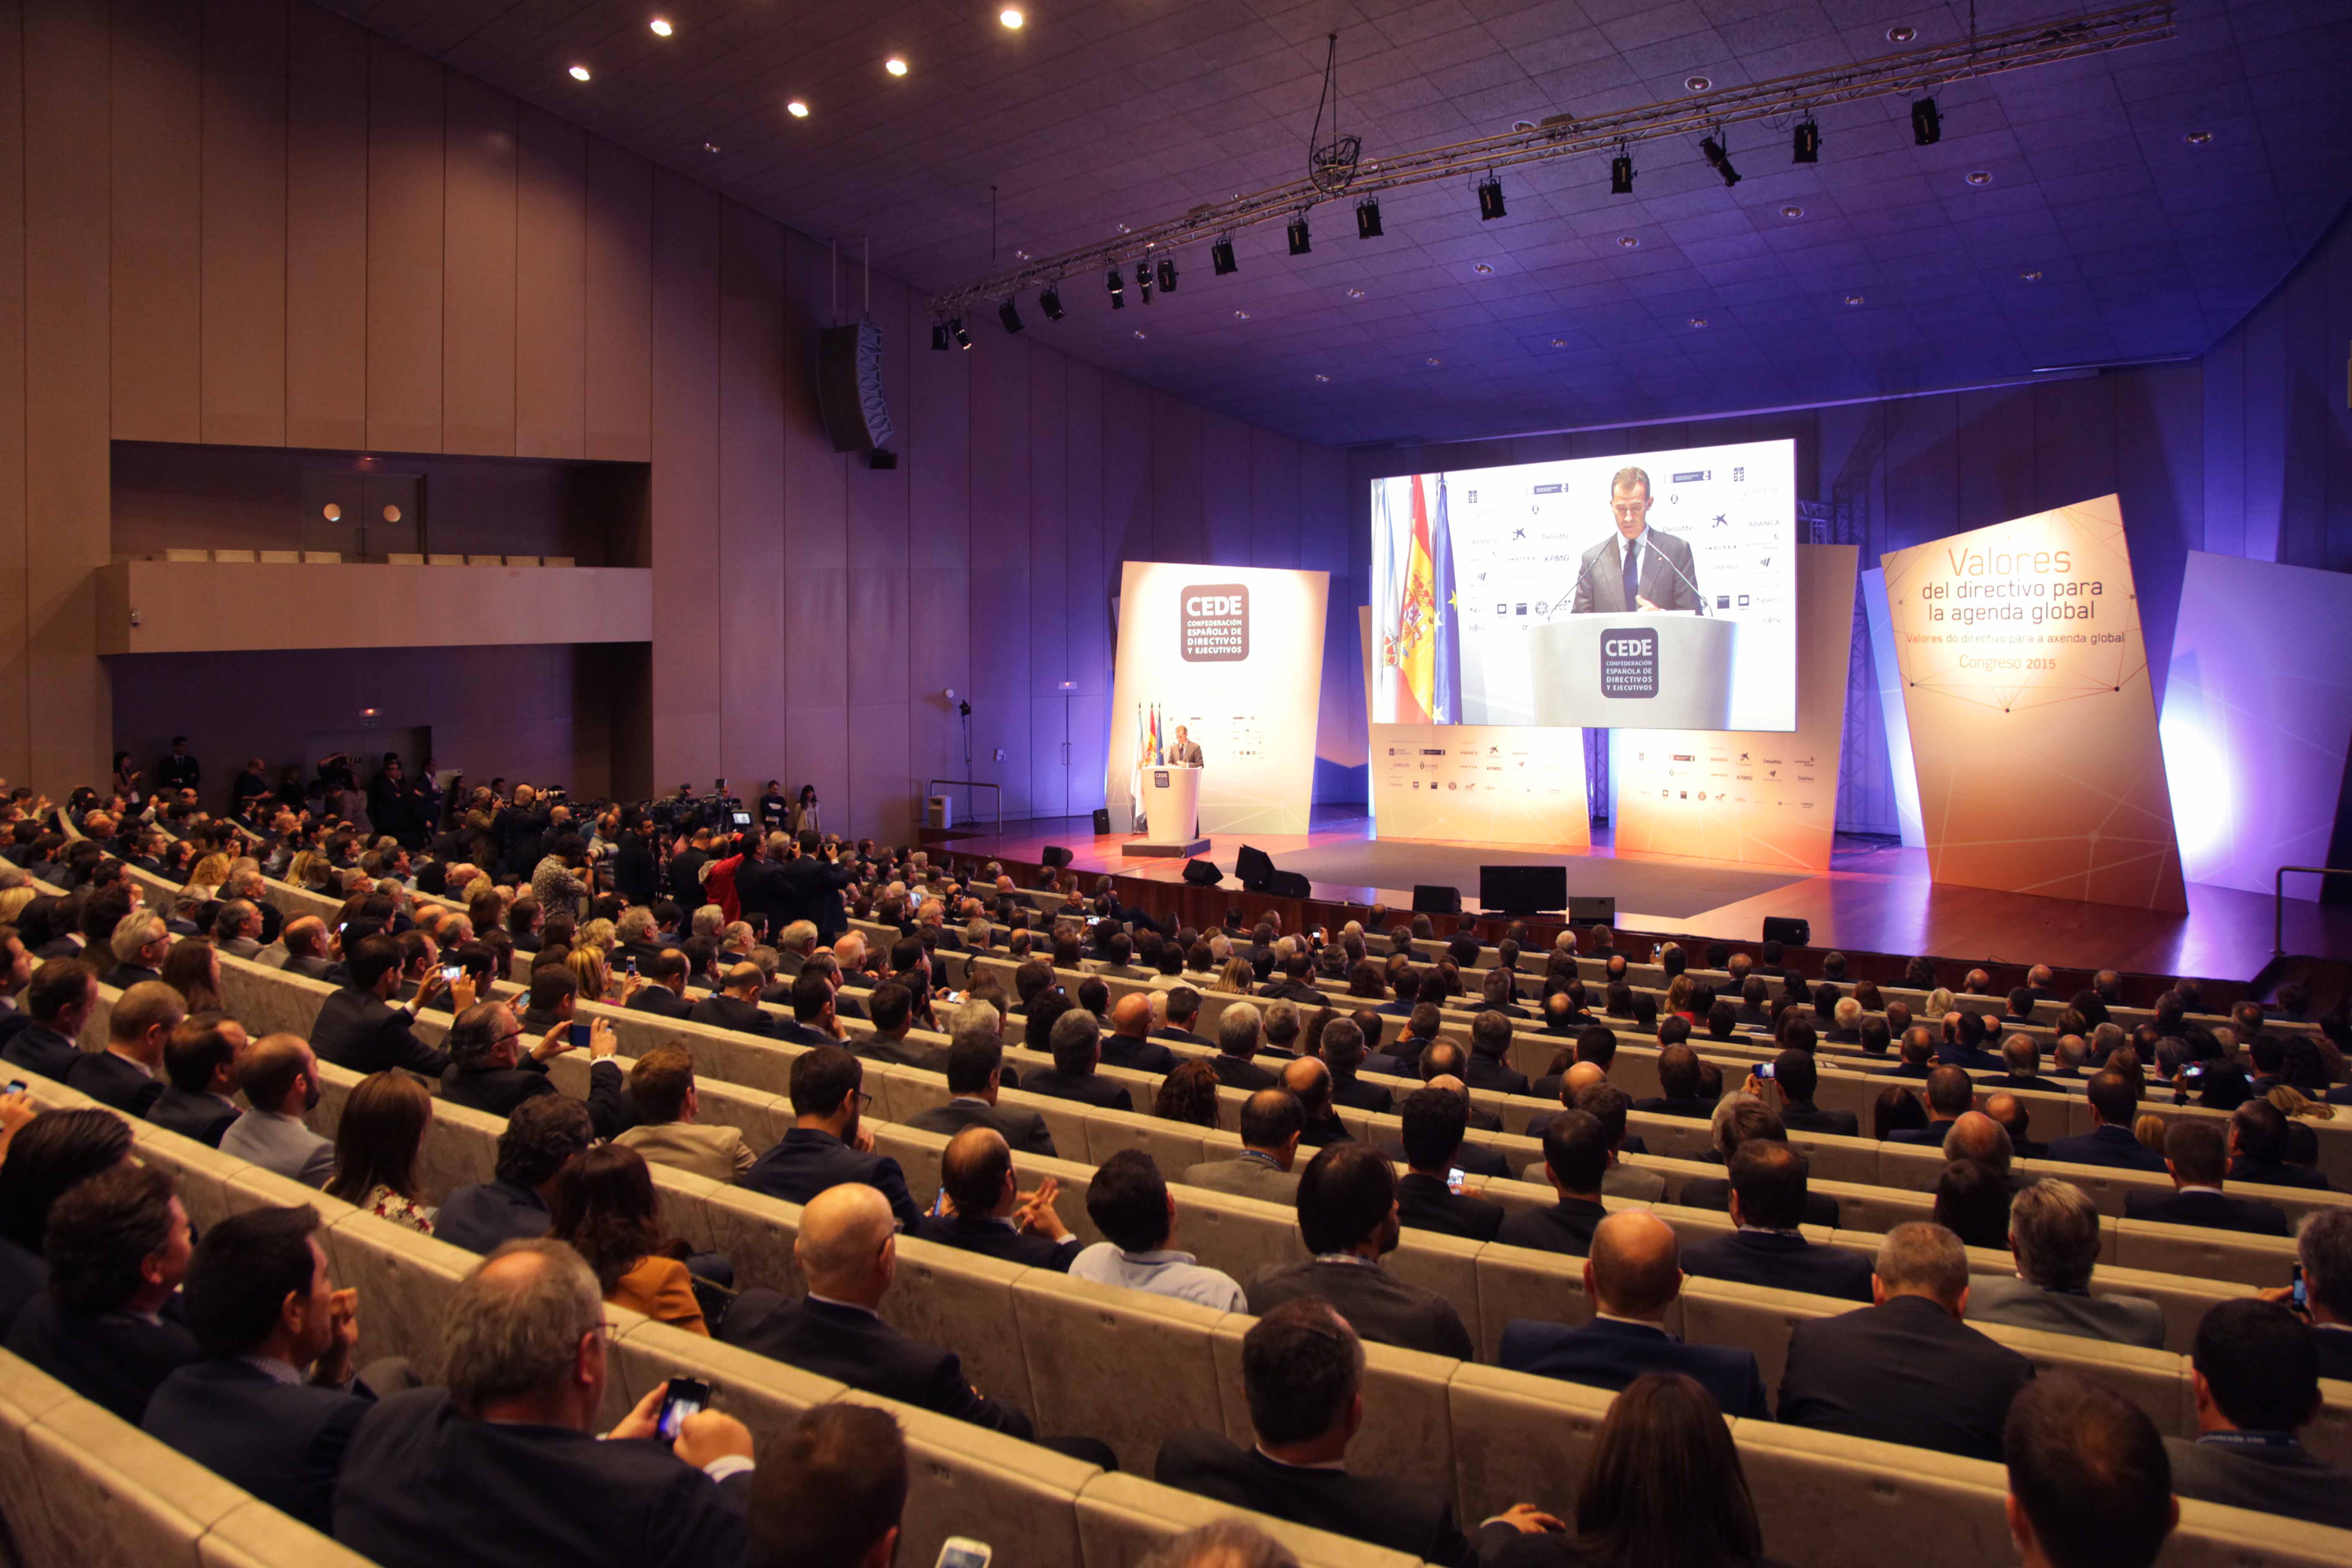 Palexco acogió dos grandes congresos, el CEDE y la Reunión Nacional de Trasplantes